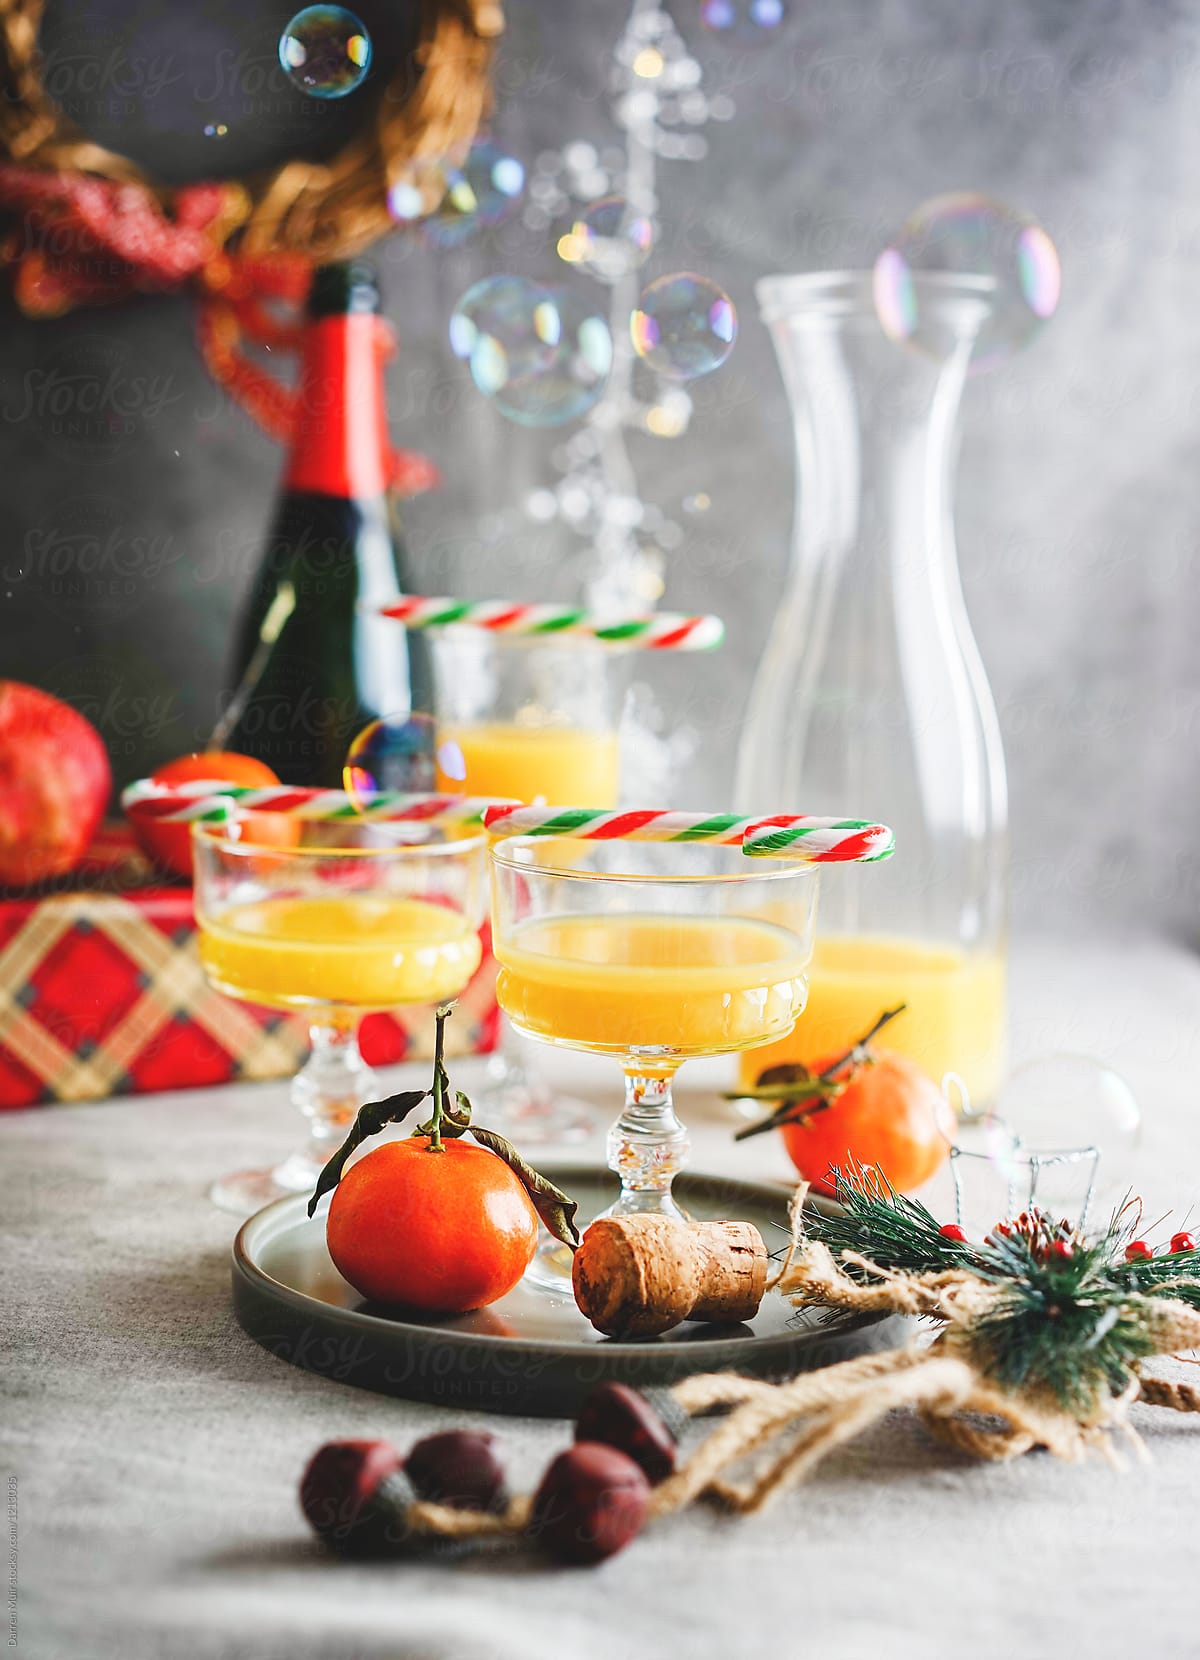 Bucks fizz drinks in festive setting.